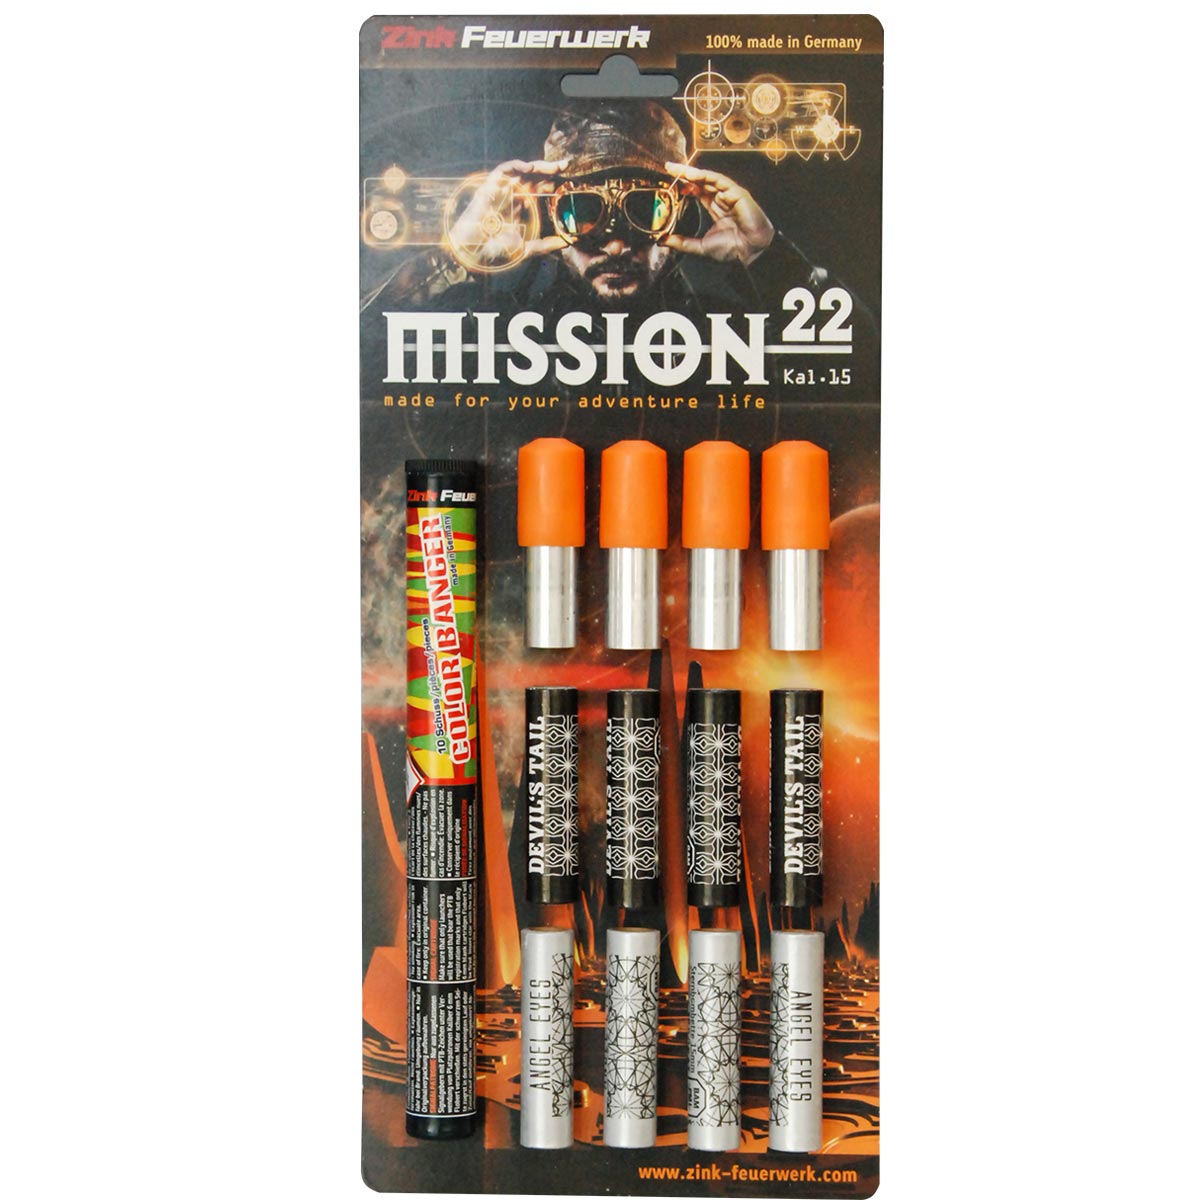 Mission 22 Schreckschusswaffen Feuerwerk Sortiment mit Sternbombetten